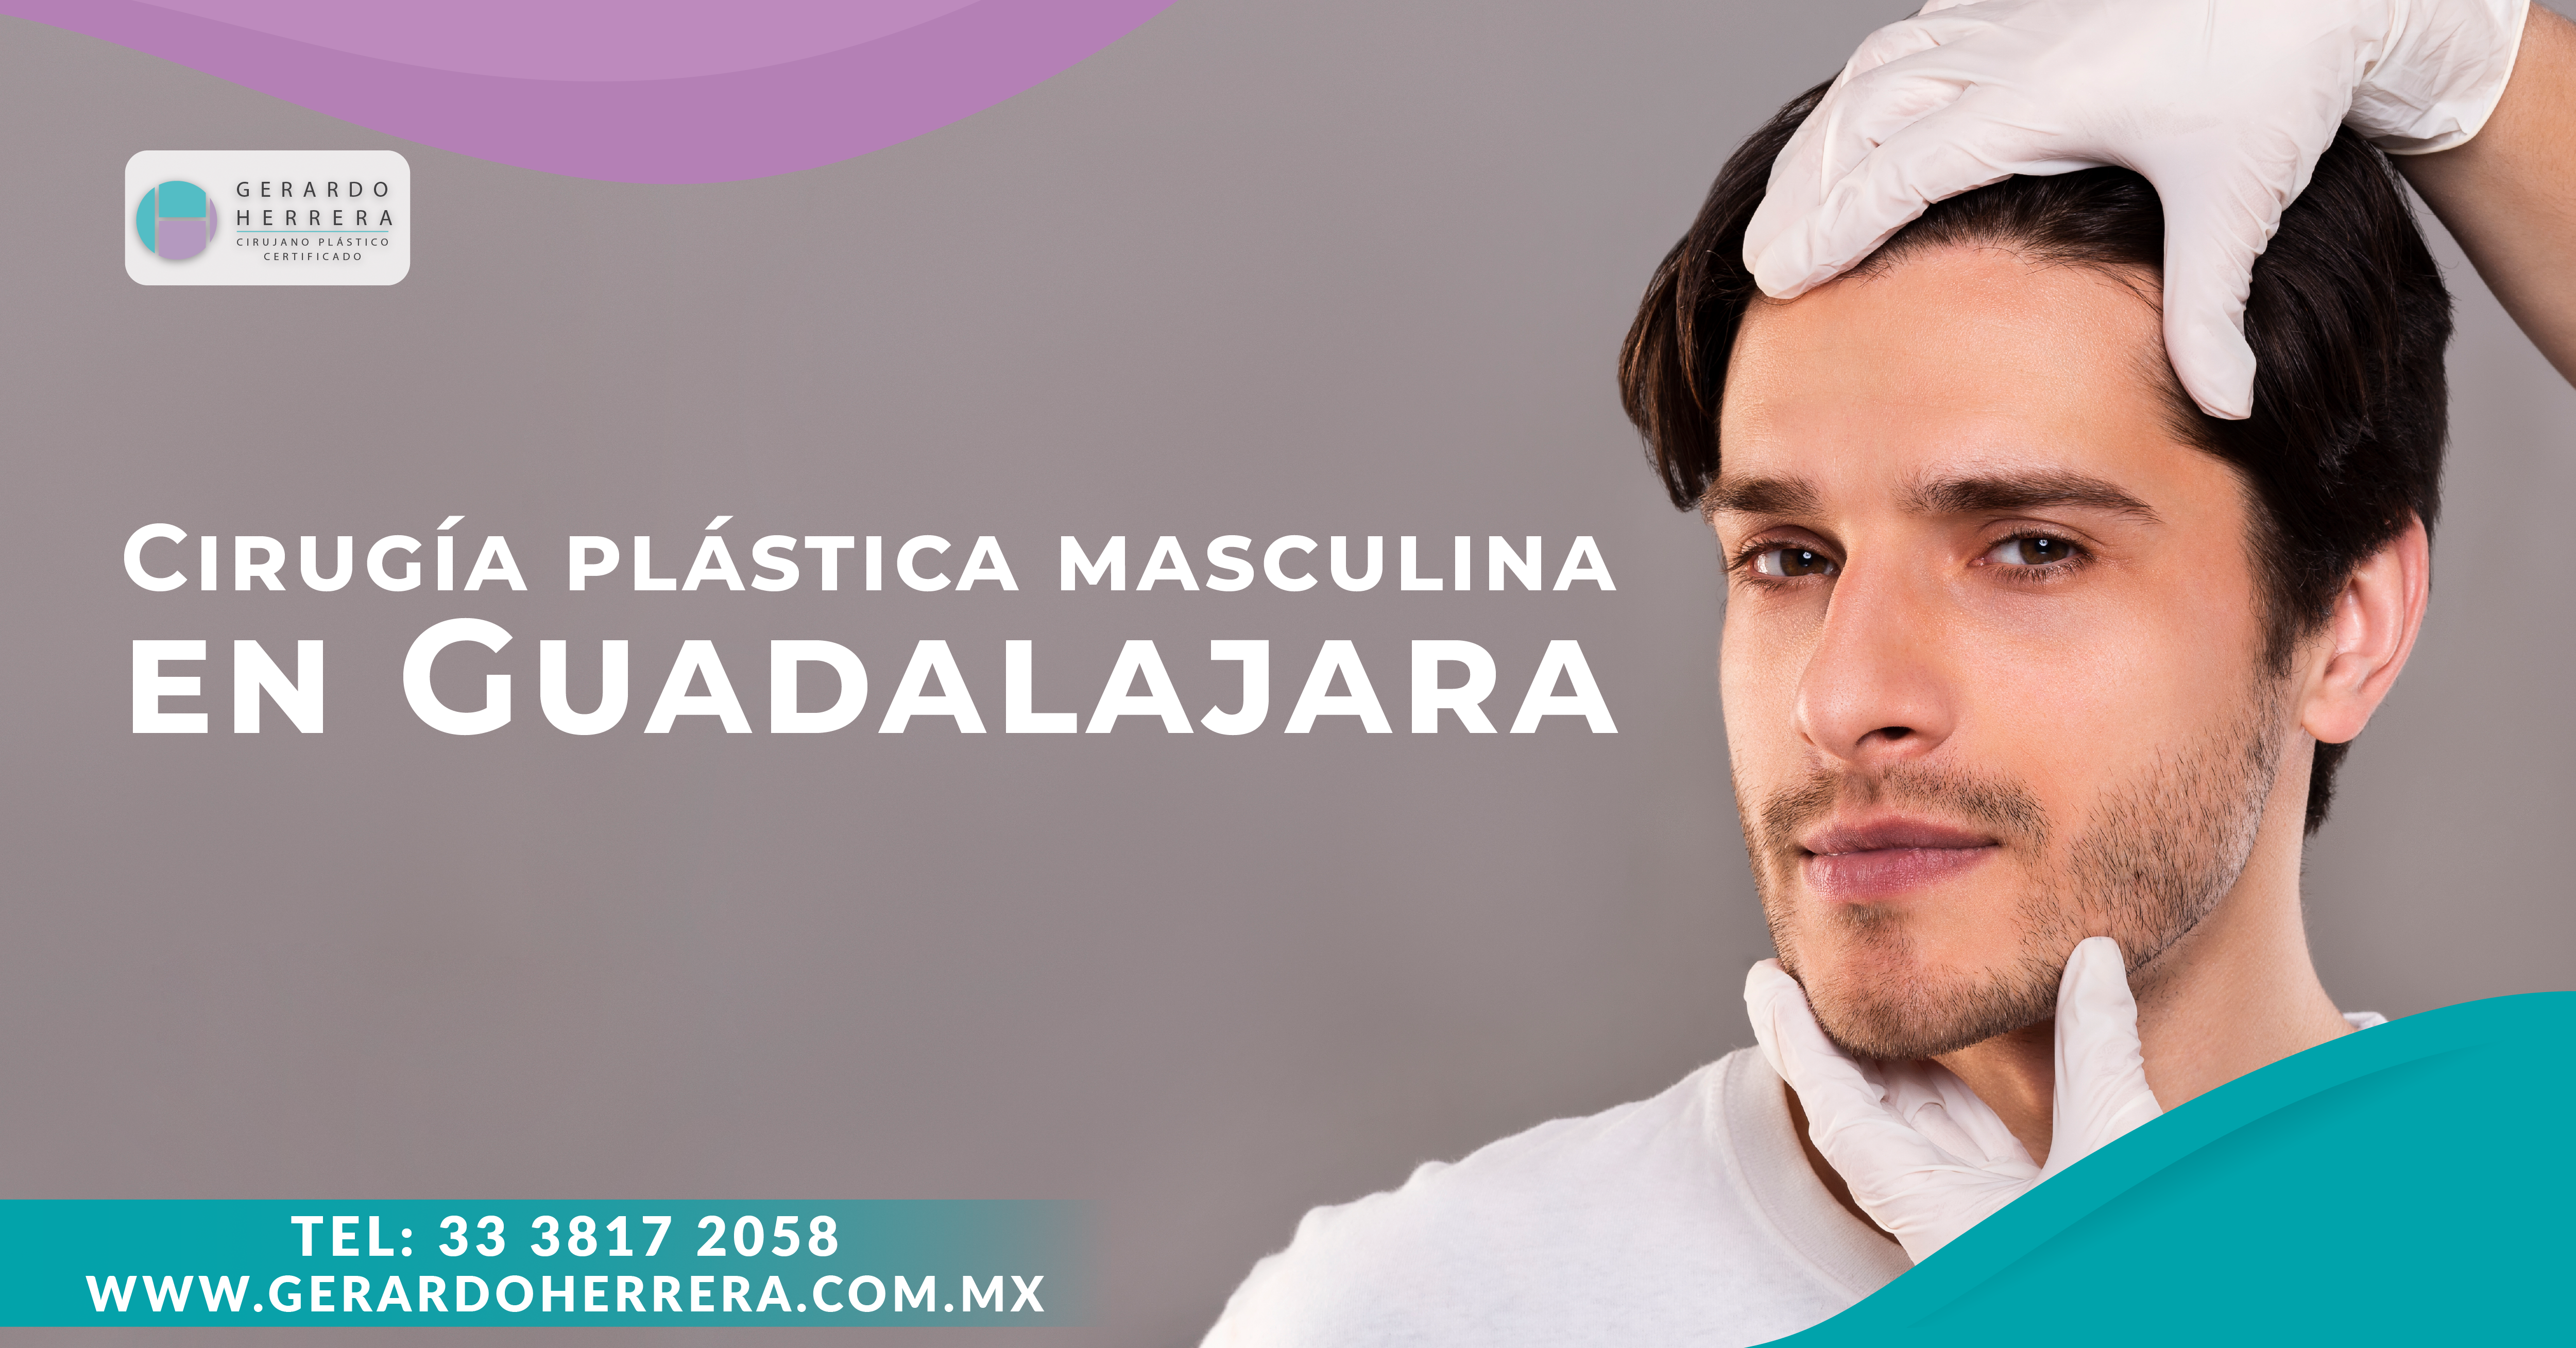 Cirugía plástica masculina en Guadalajara